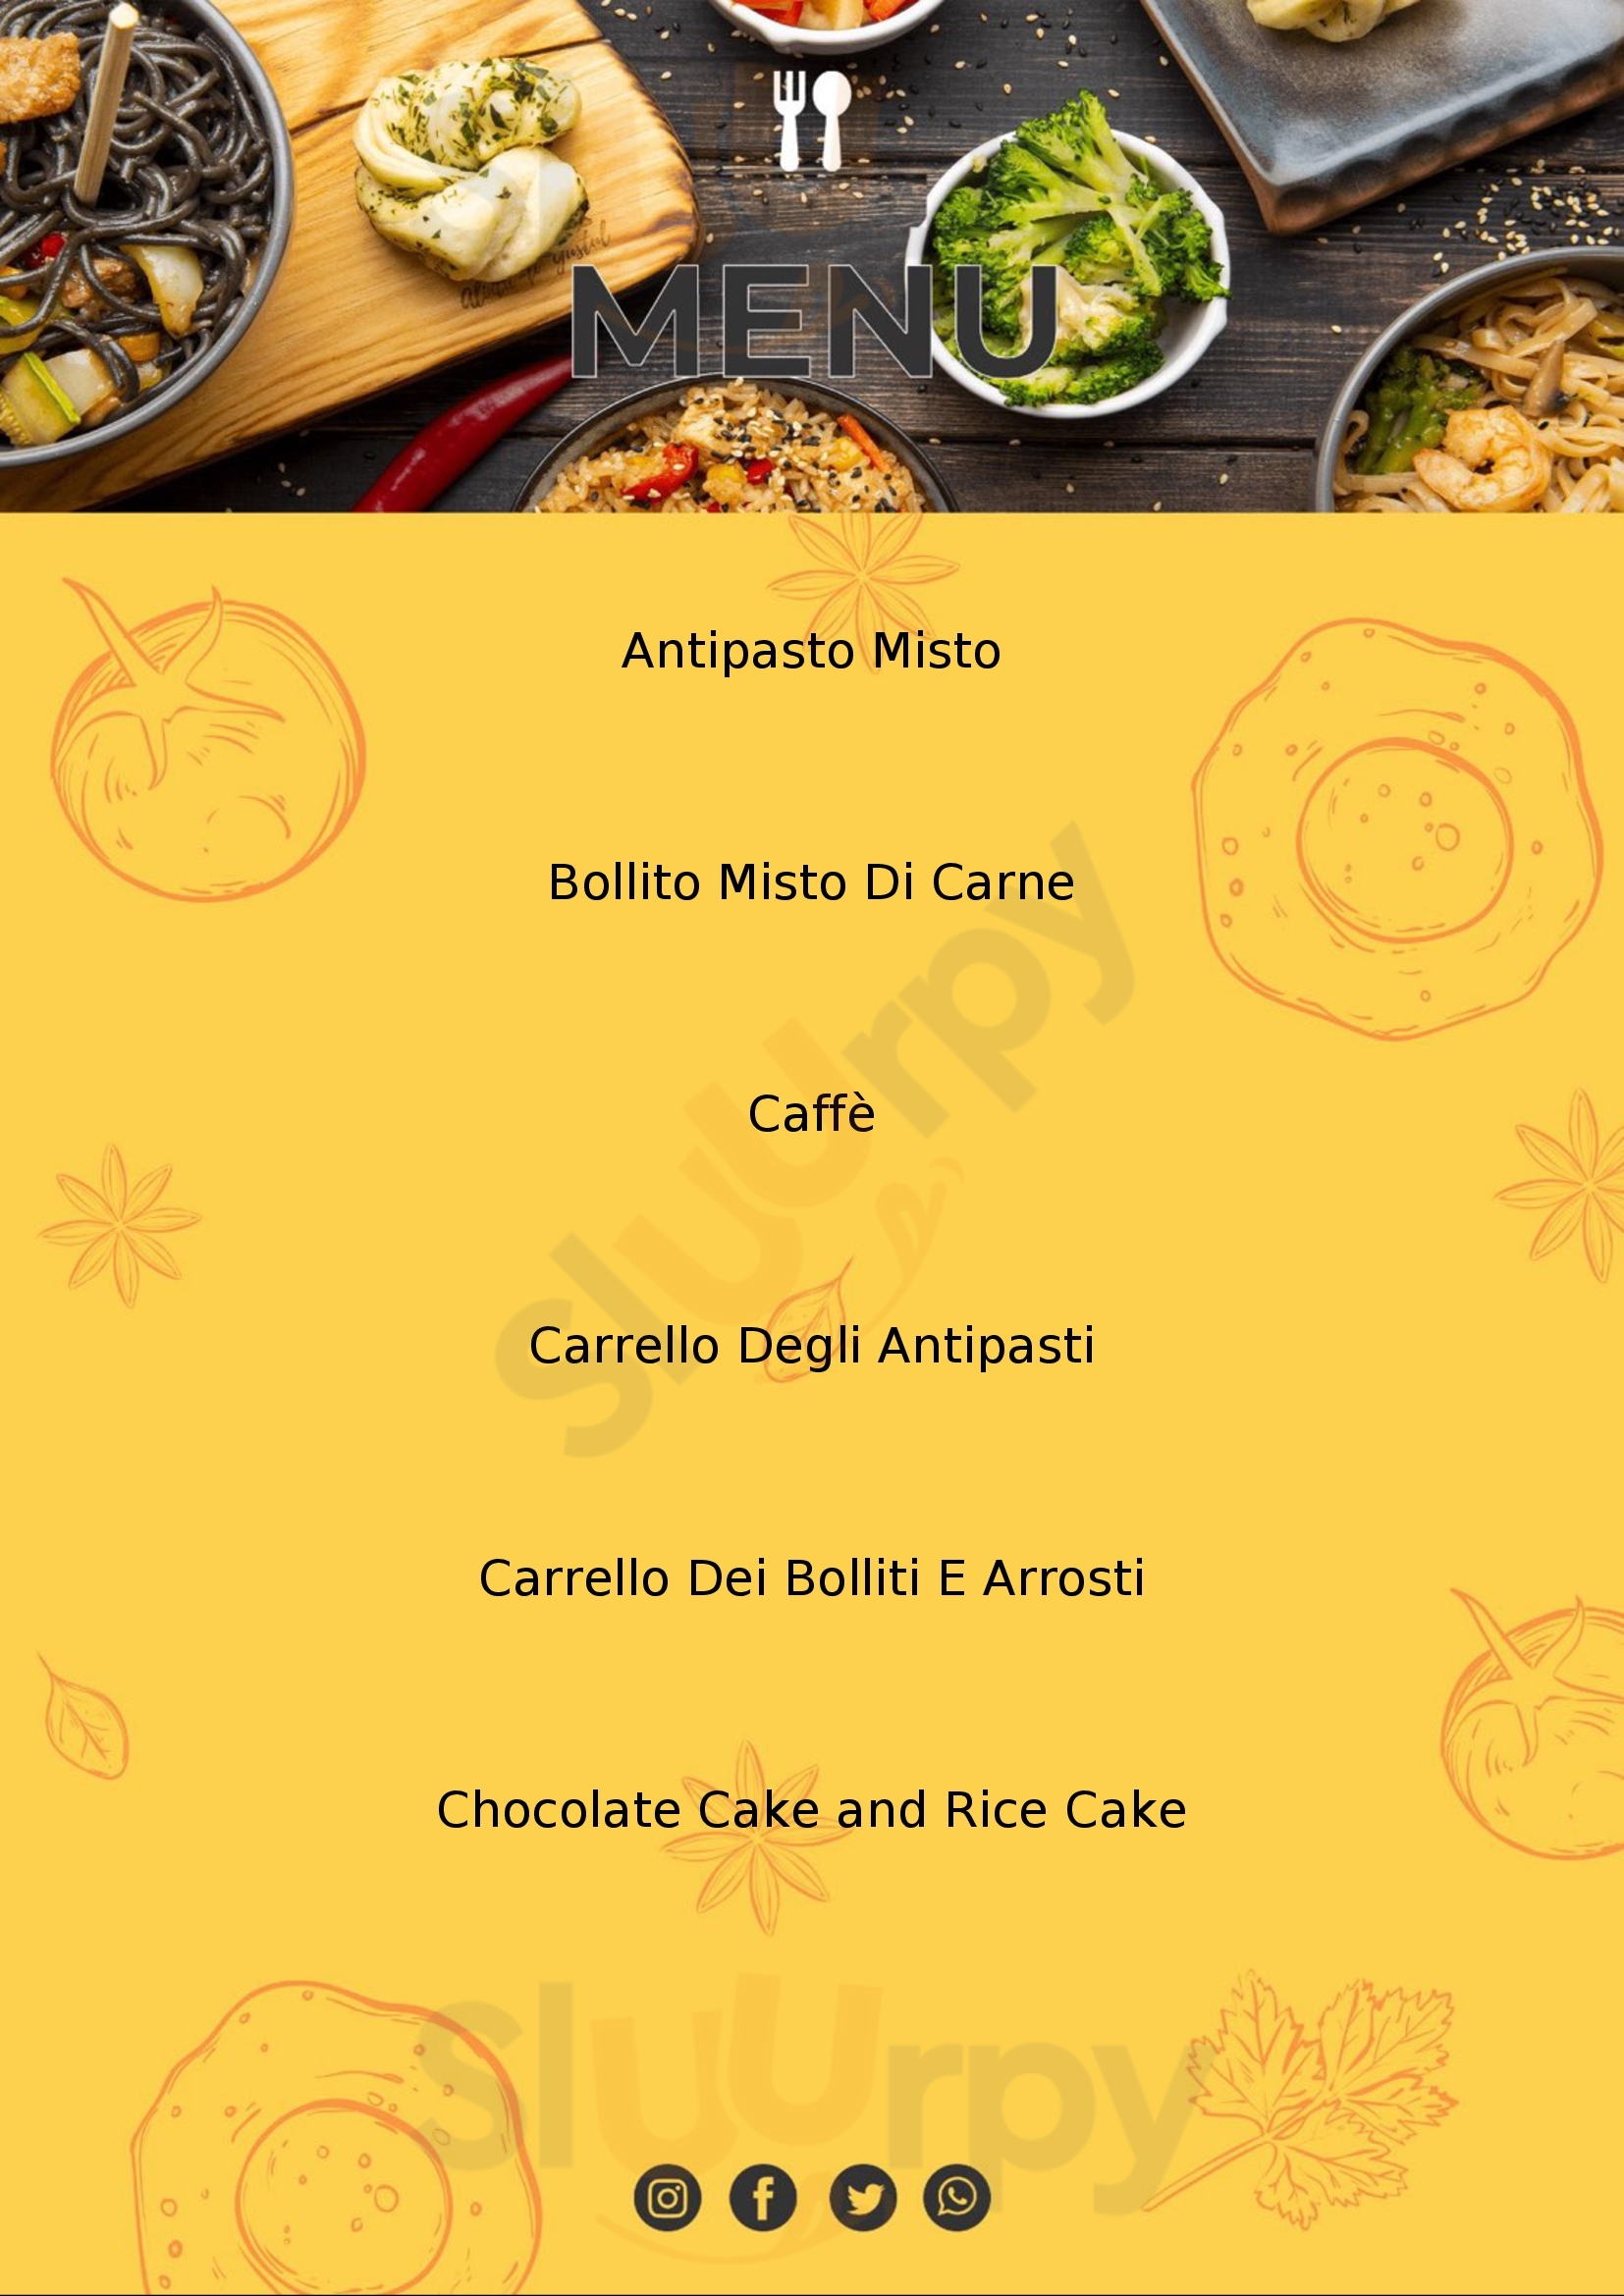 Arnaldo - Clinica Gastronomica Rubiera menù 1 pagina